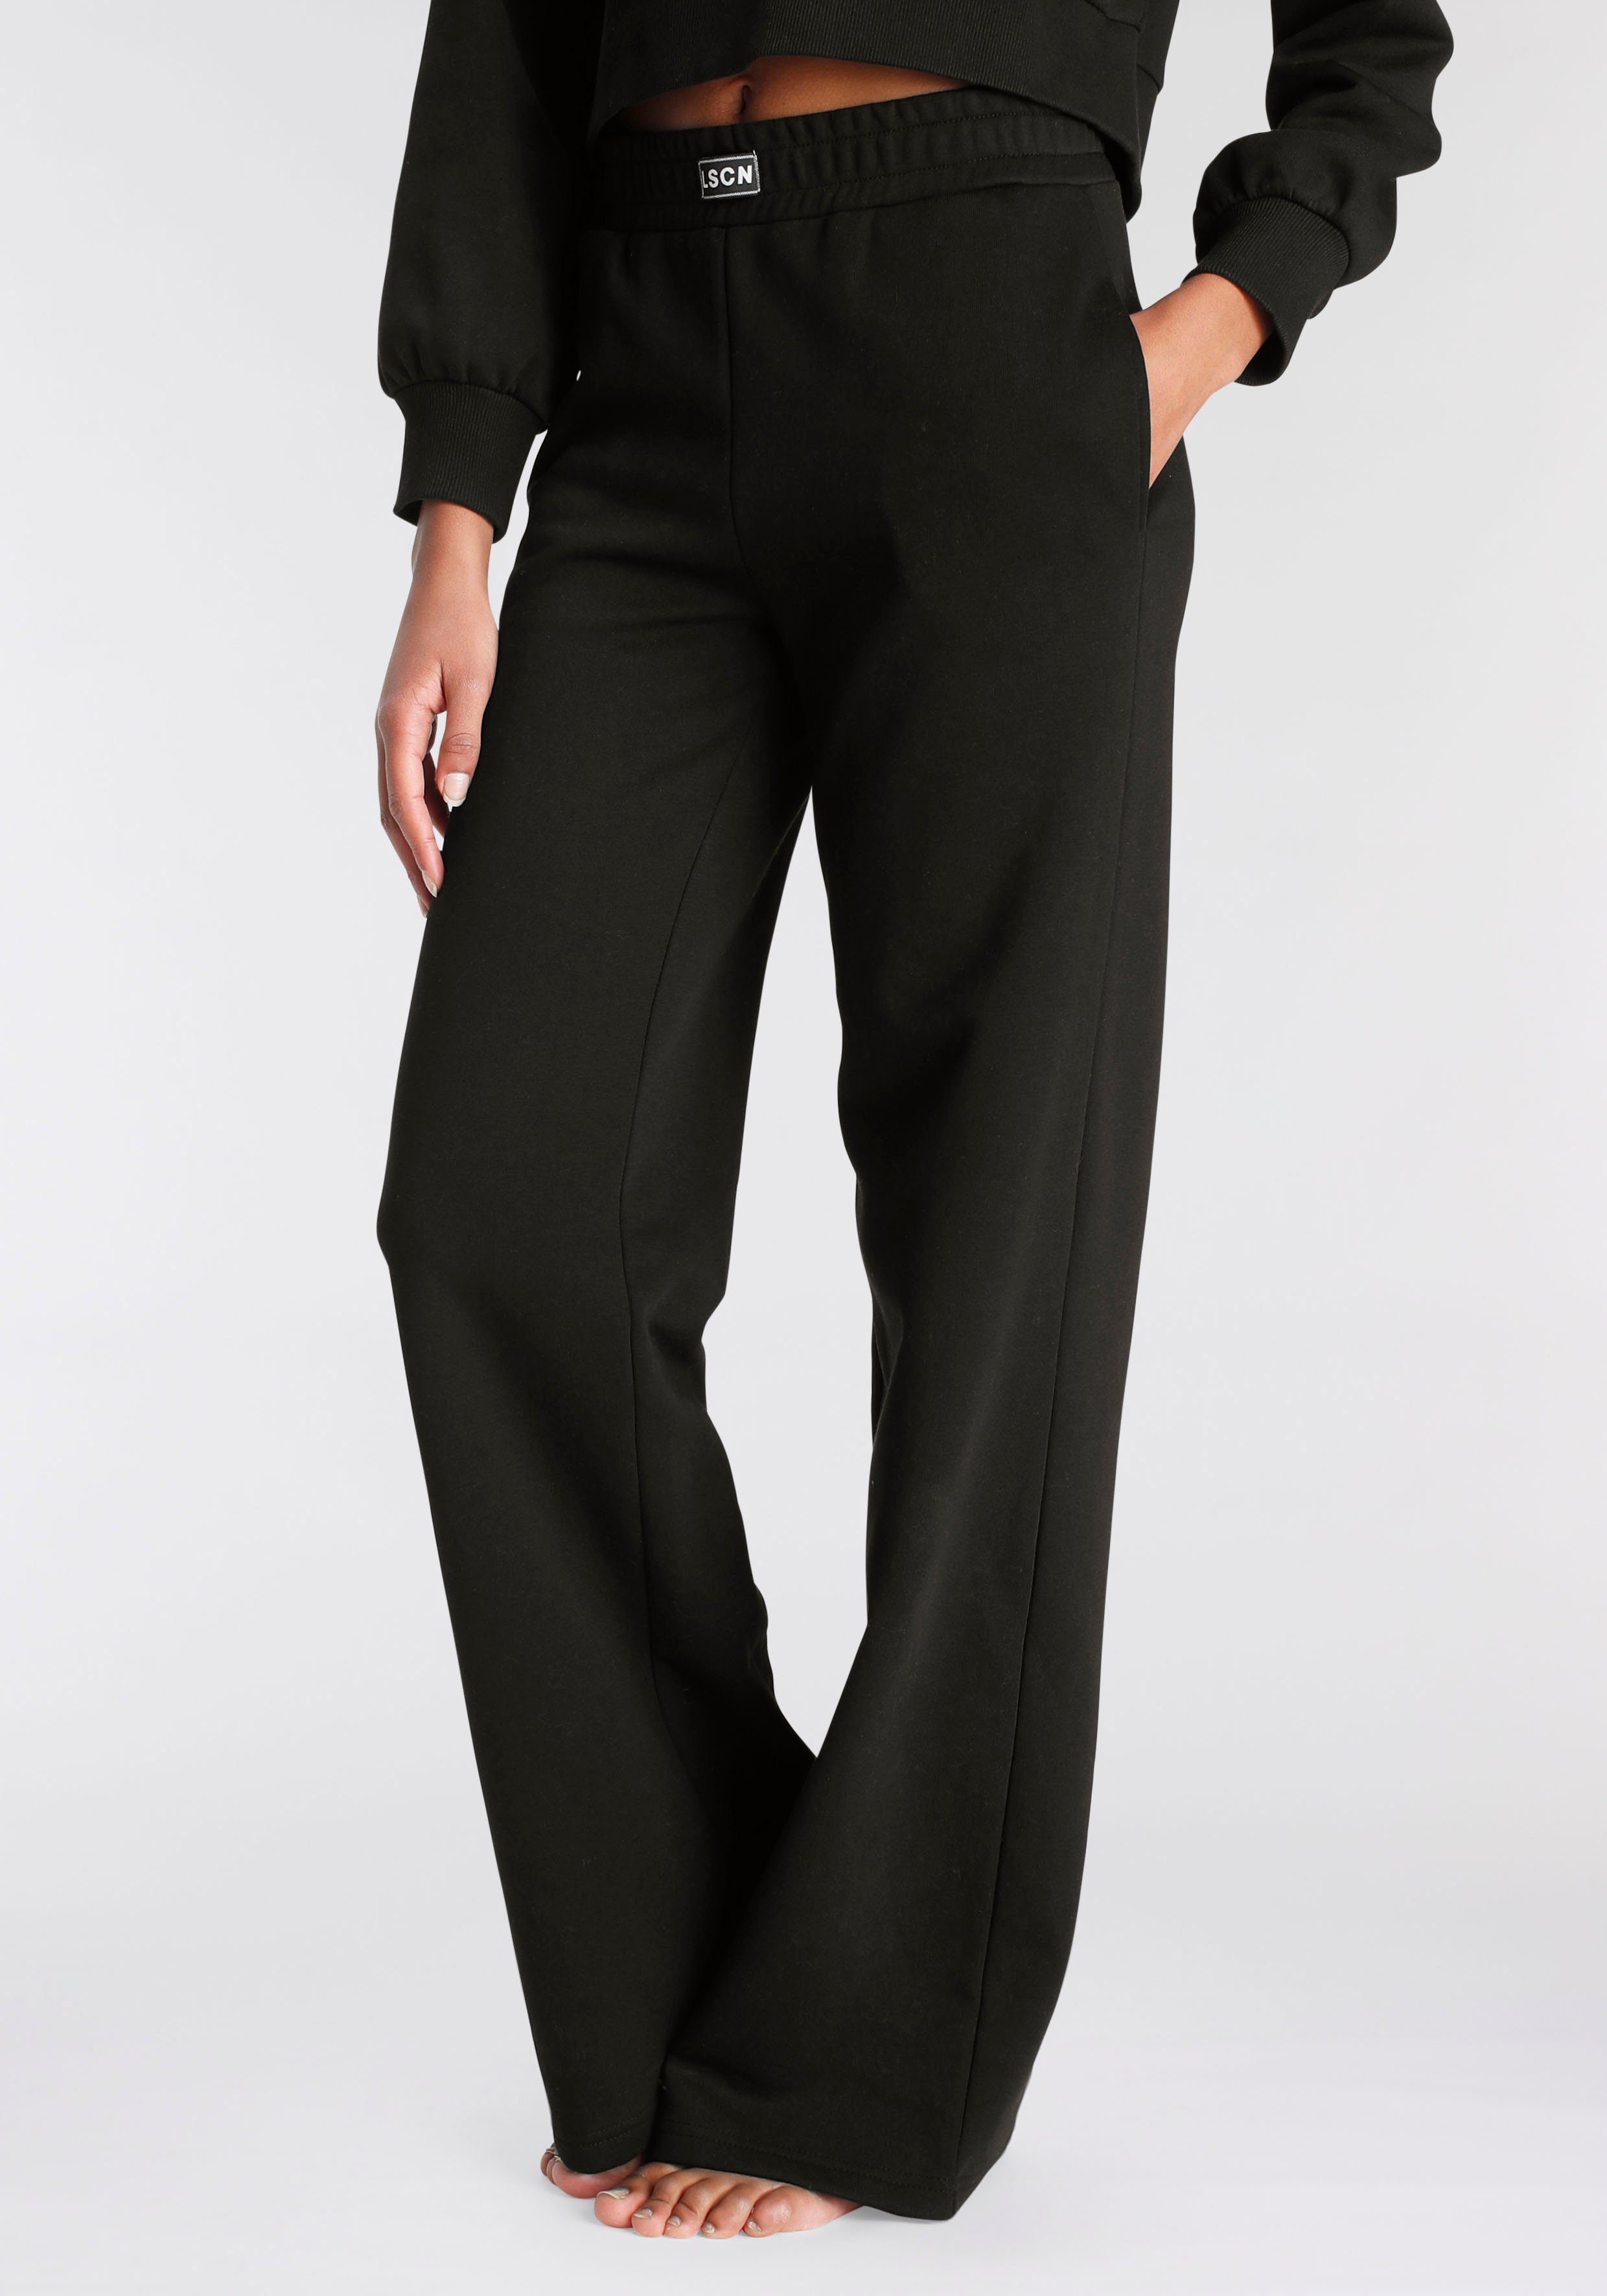 LASCANA Sweathose mit seitlichen Taschen, Loungewear, Loungeanzug schwarz